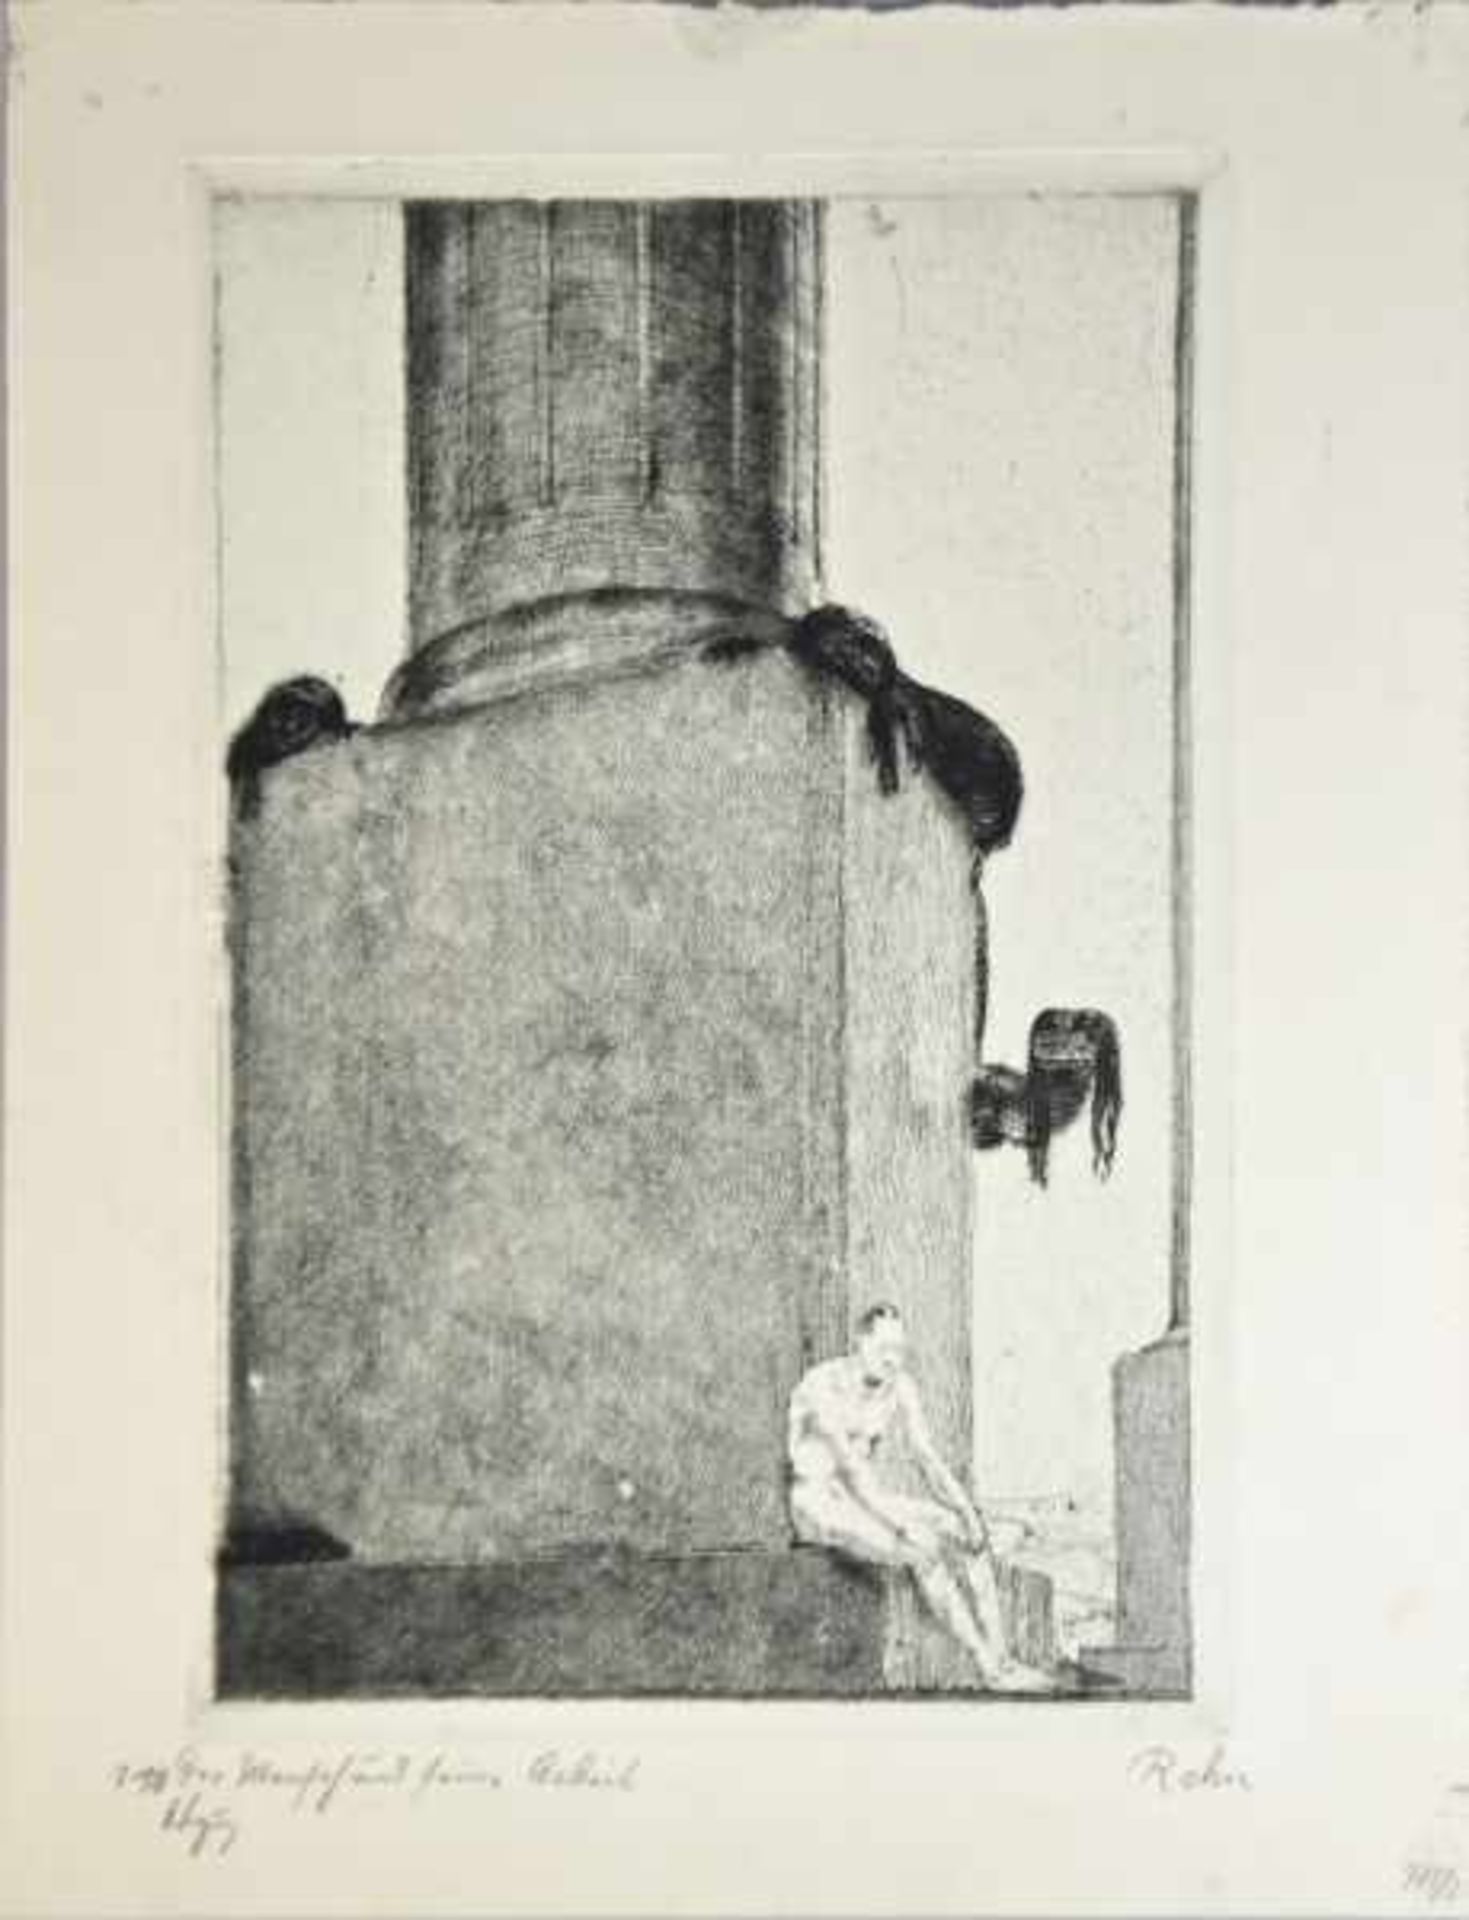 REHN Walter Richard (1884-1951 Dresden) "Der Mensch und seine Arbeit", Mann sitzt nachdenklich auf - Image 2 of 3